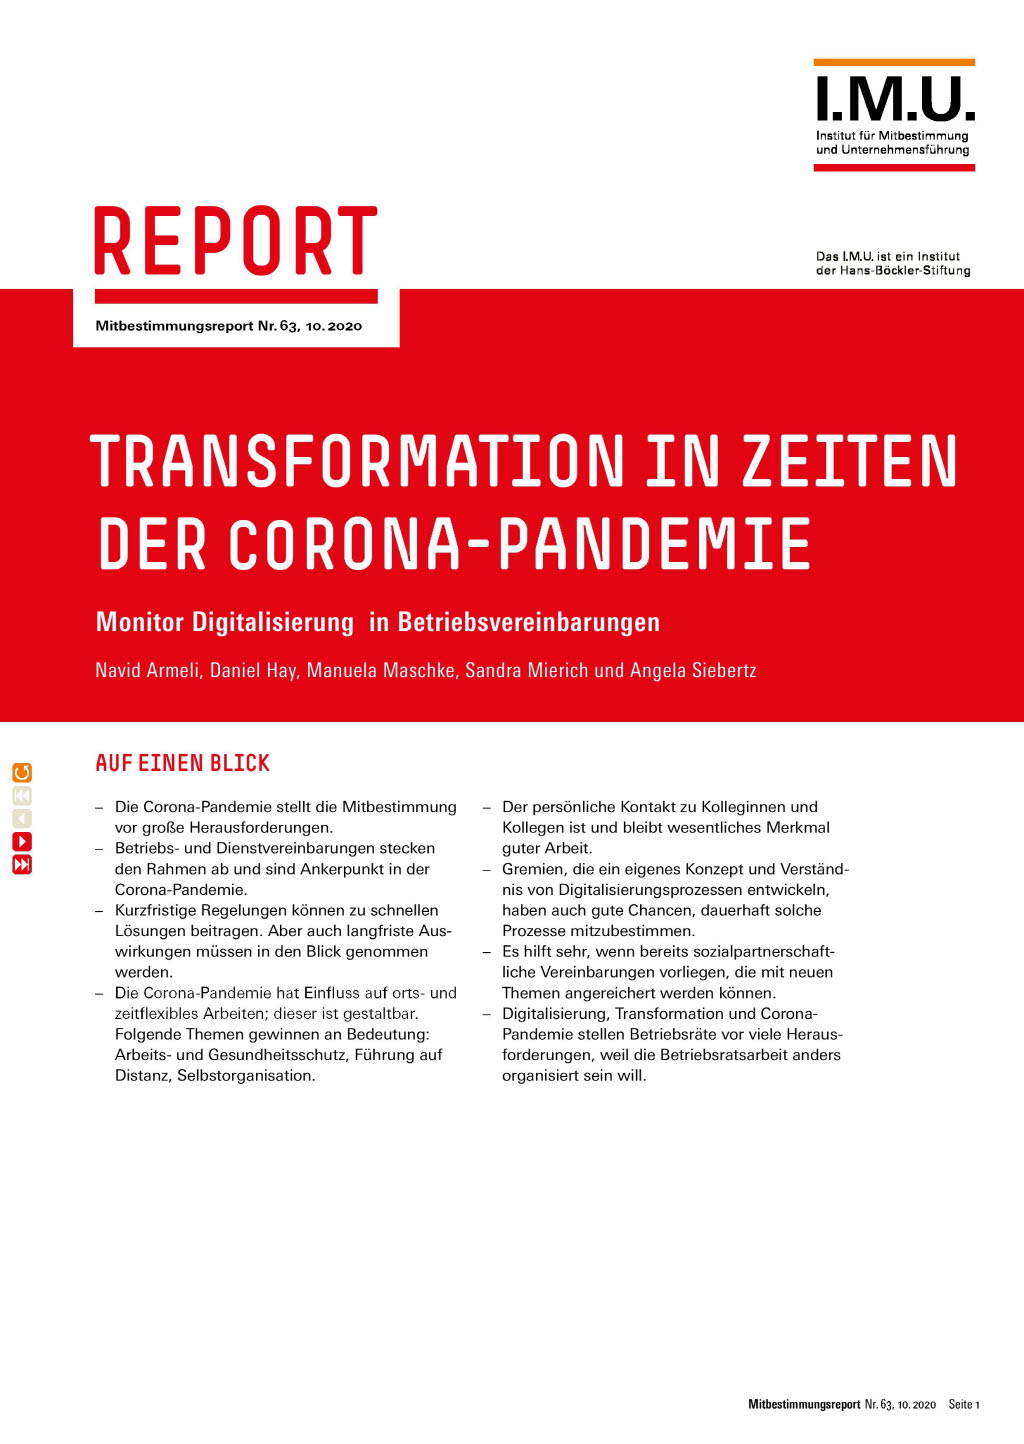 Transformation in Zeiten der Corona-Pandemie